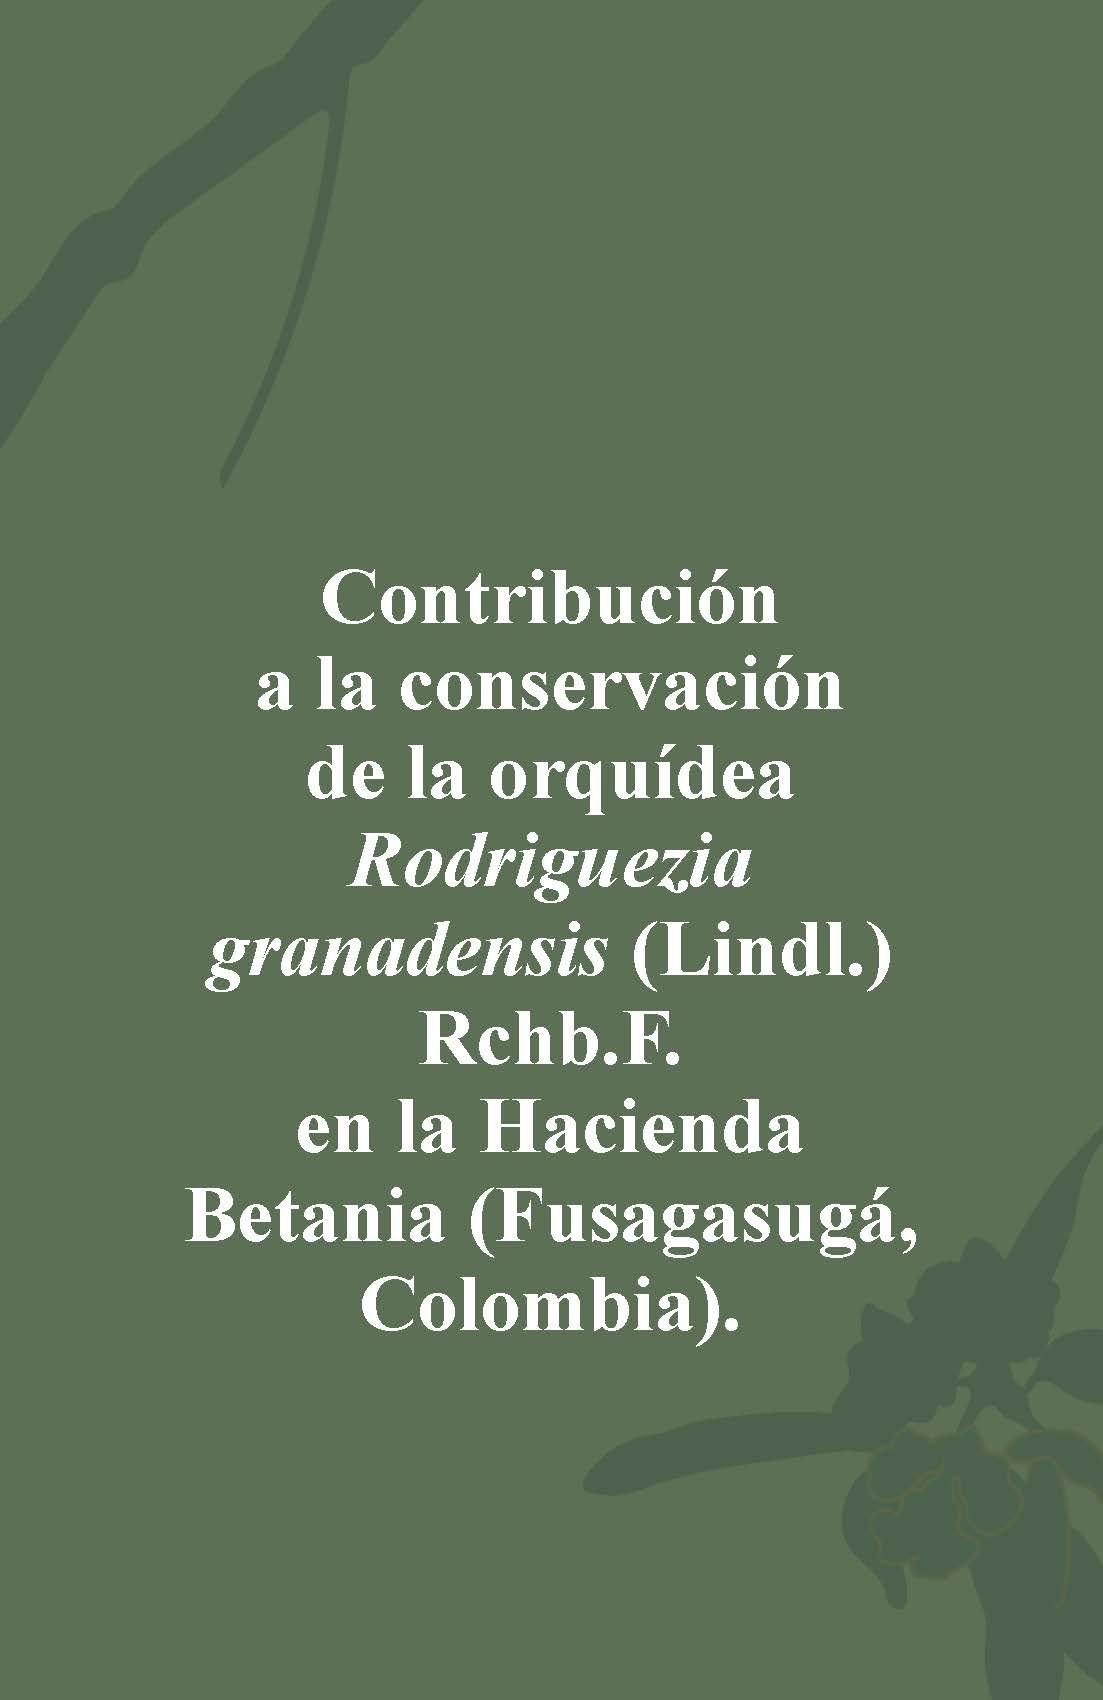 CONTRIBUCIÓN A LA CONSERVACIÓN DE LA ORQUÍDEA Rodriguezia granadensis (Lindl.) Rchb.f. EN LA HACIENDA BETANIA (FUSAGASUGÁ, COLOMBIA)